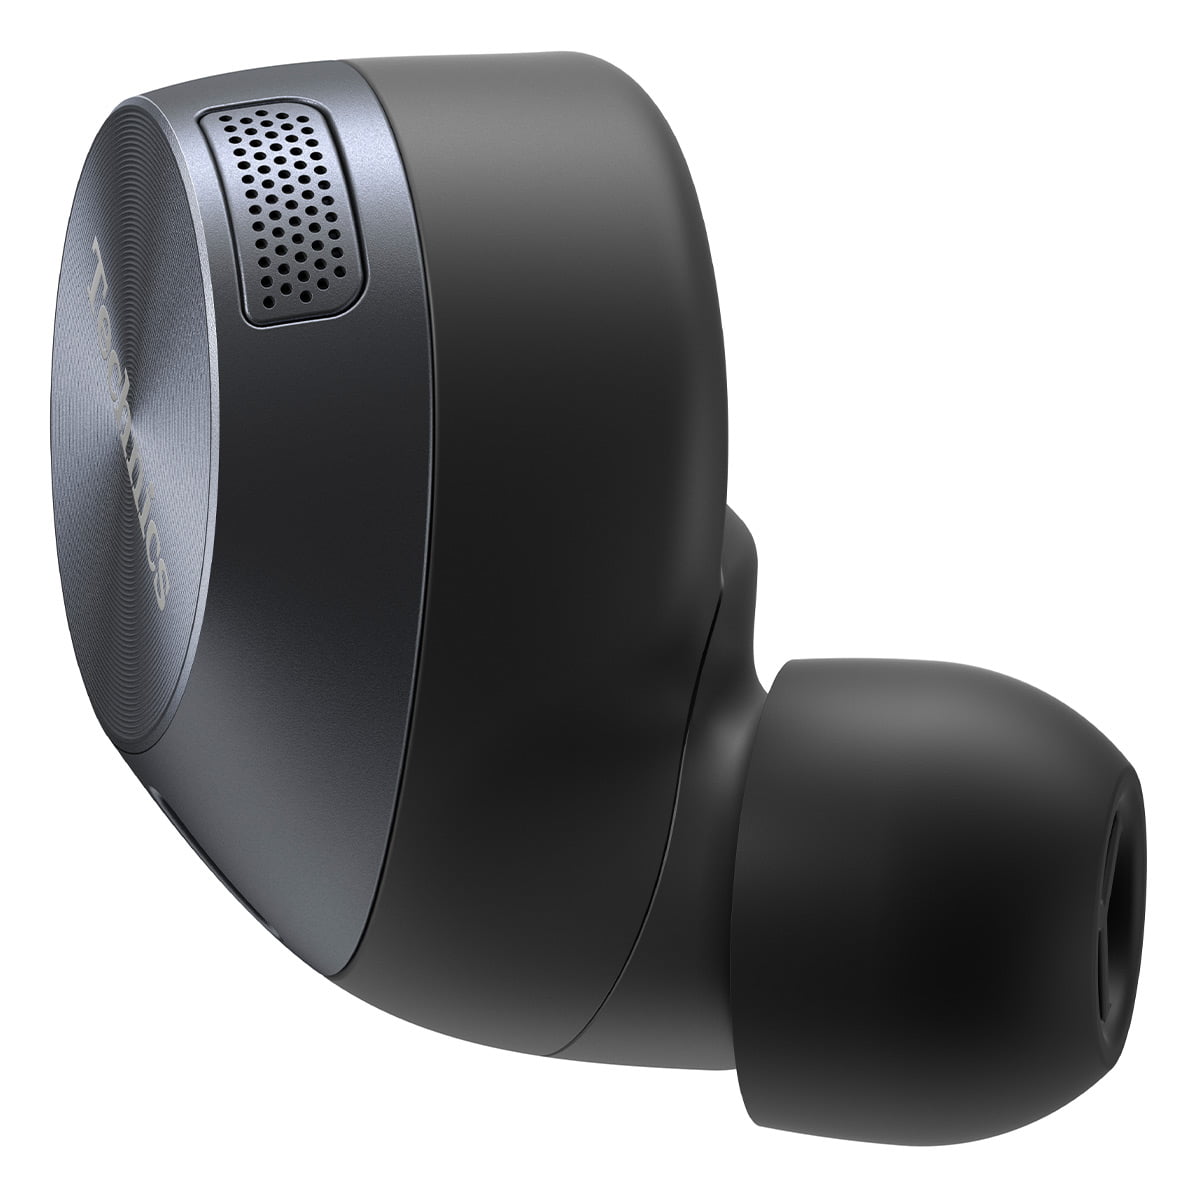 Technics EAH-AZ60-K True Wireless Earbuds (Black)